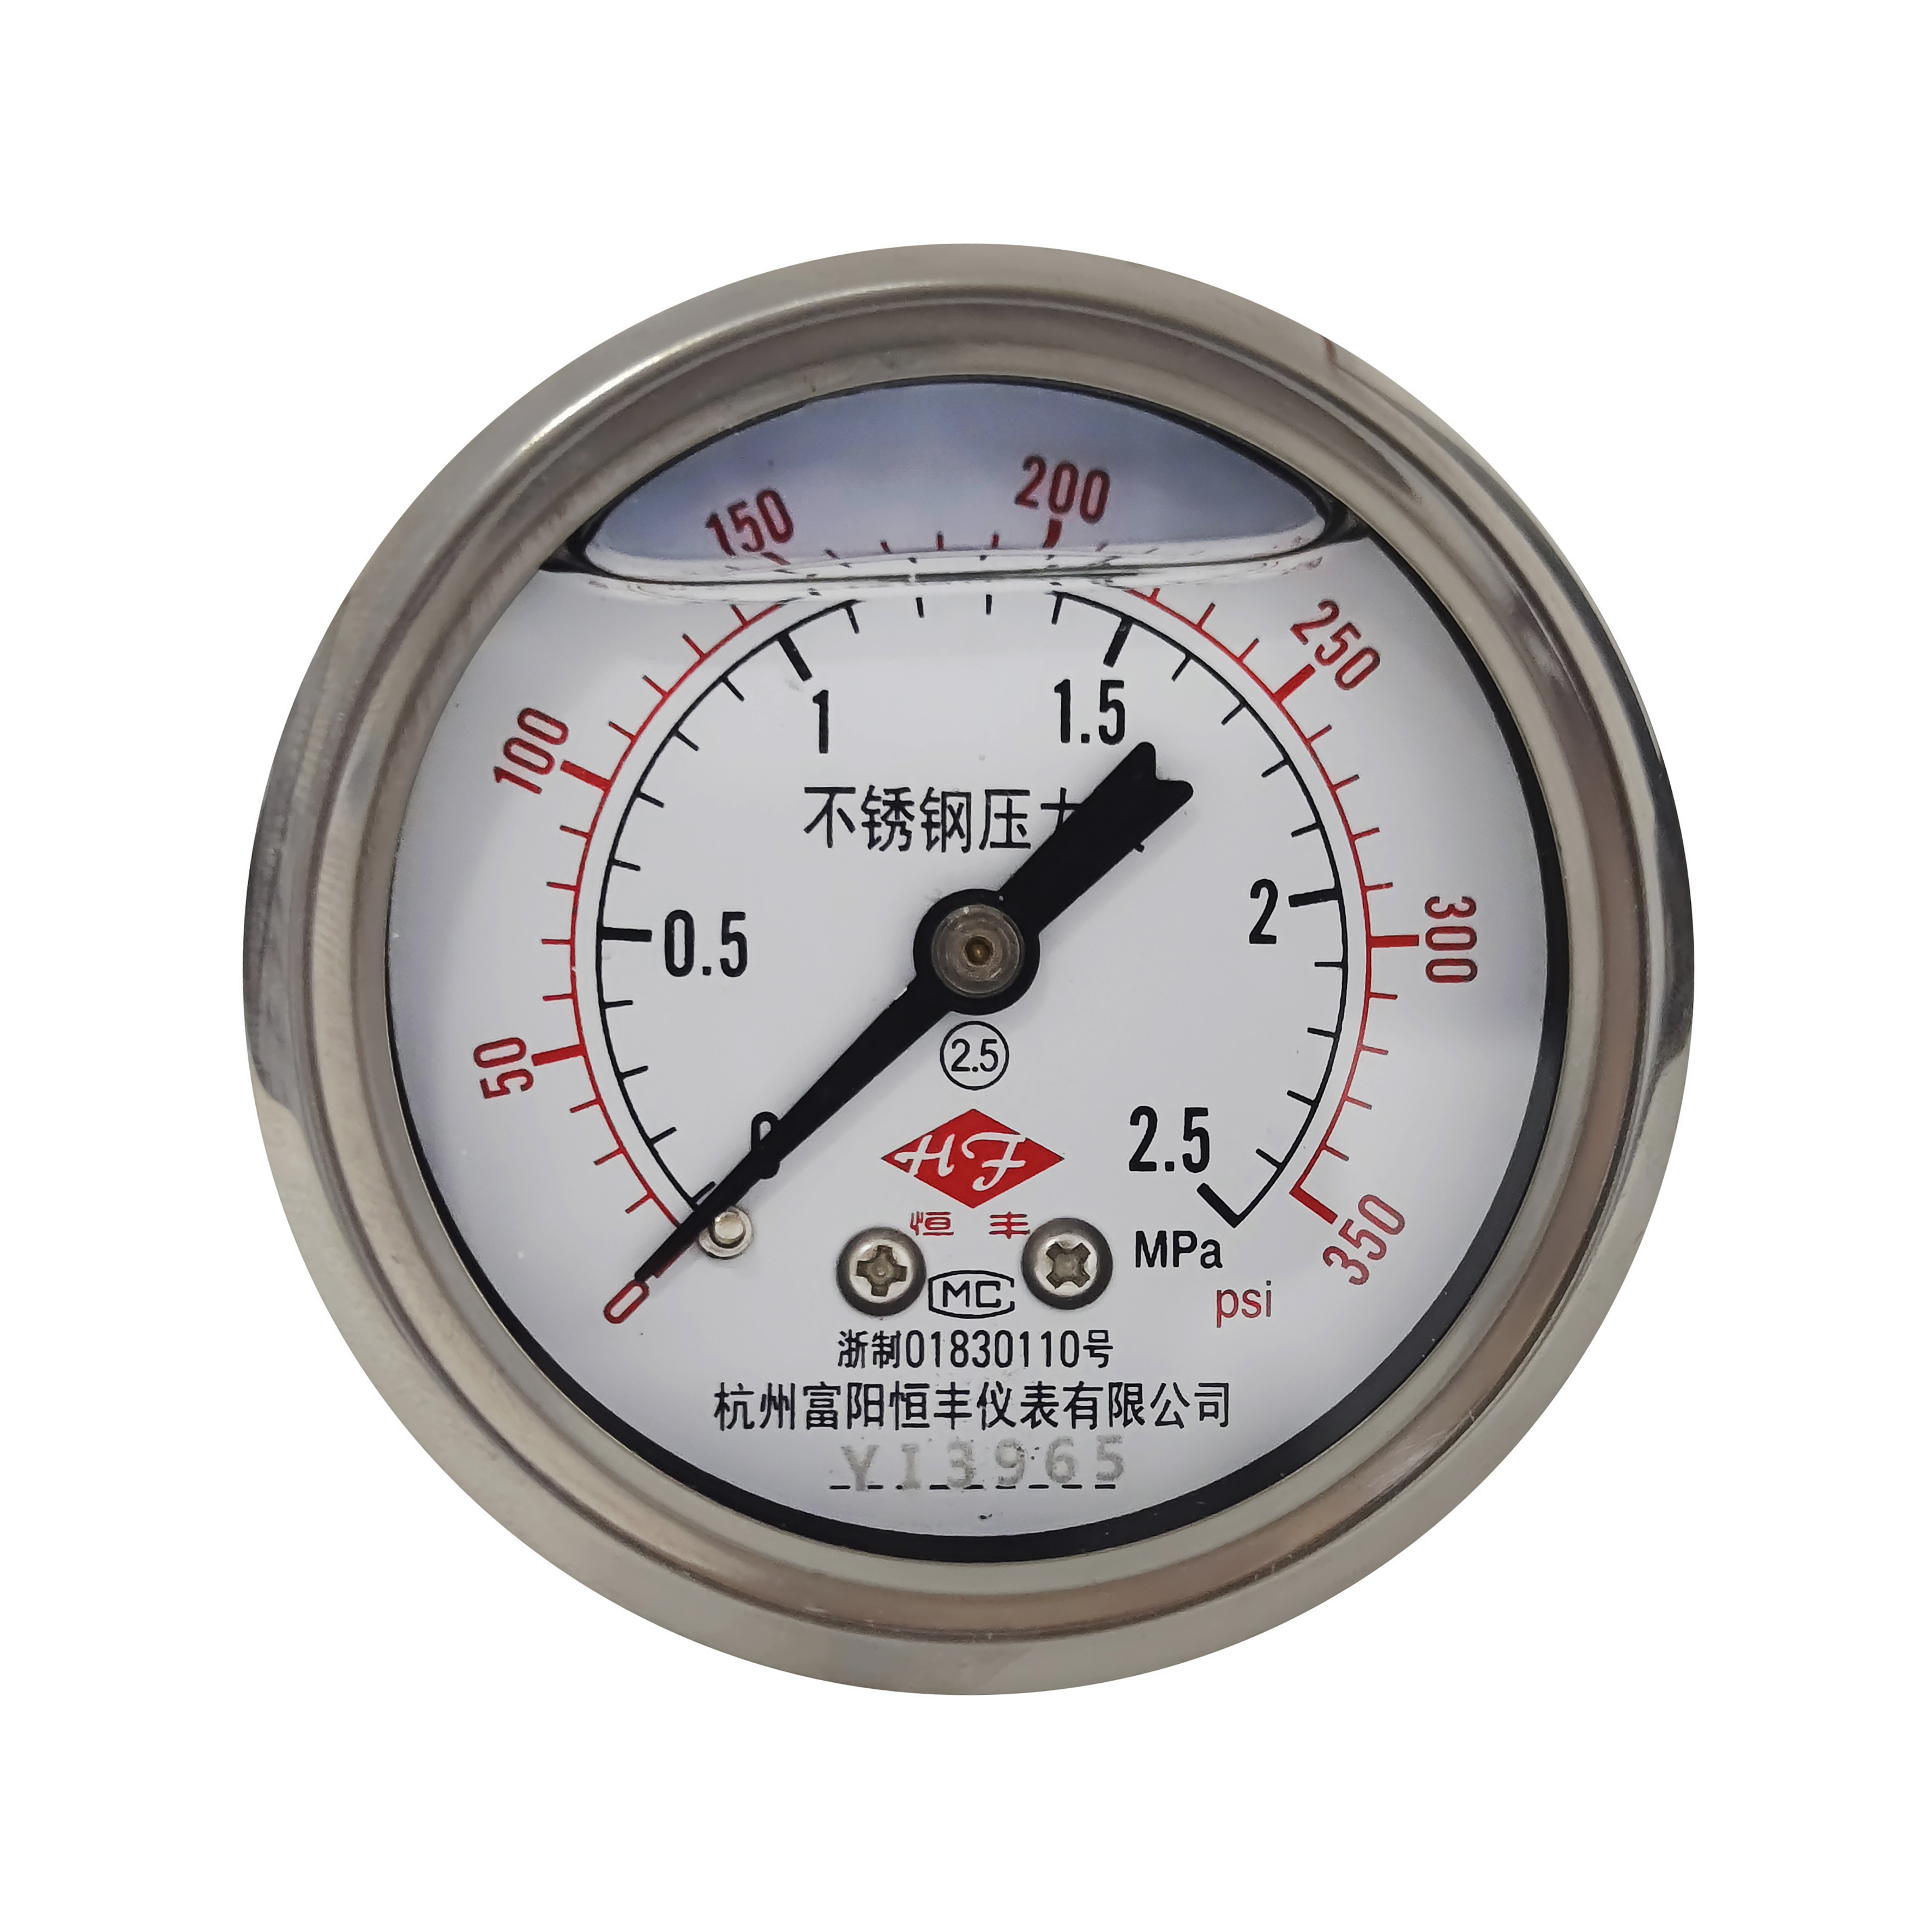 Y60BFZT stainless steel pressure gauge